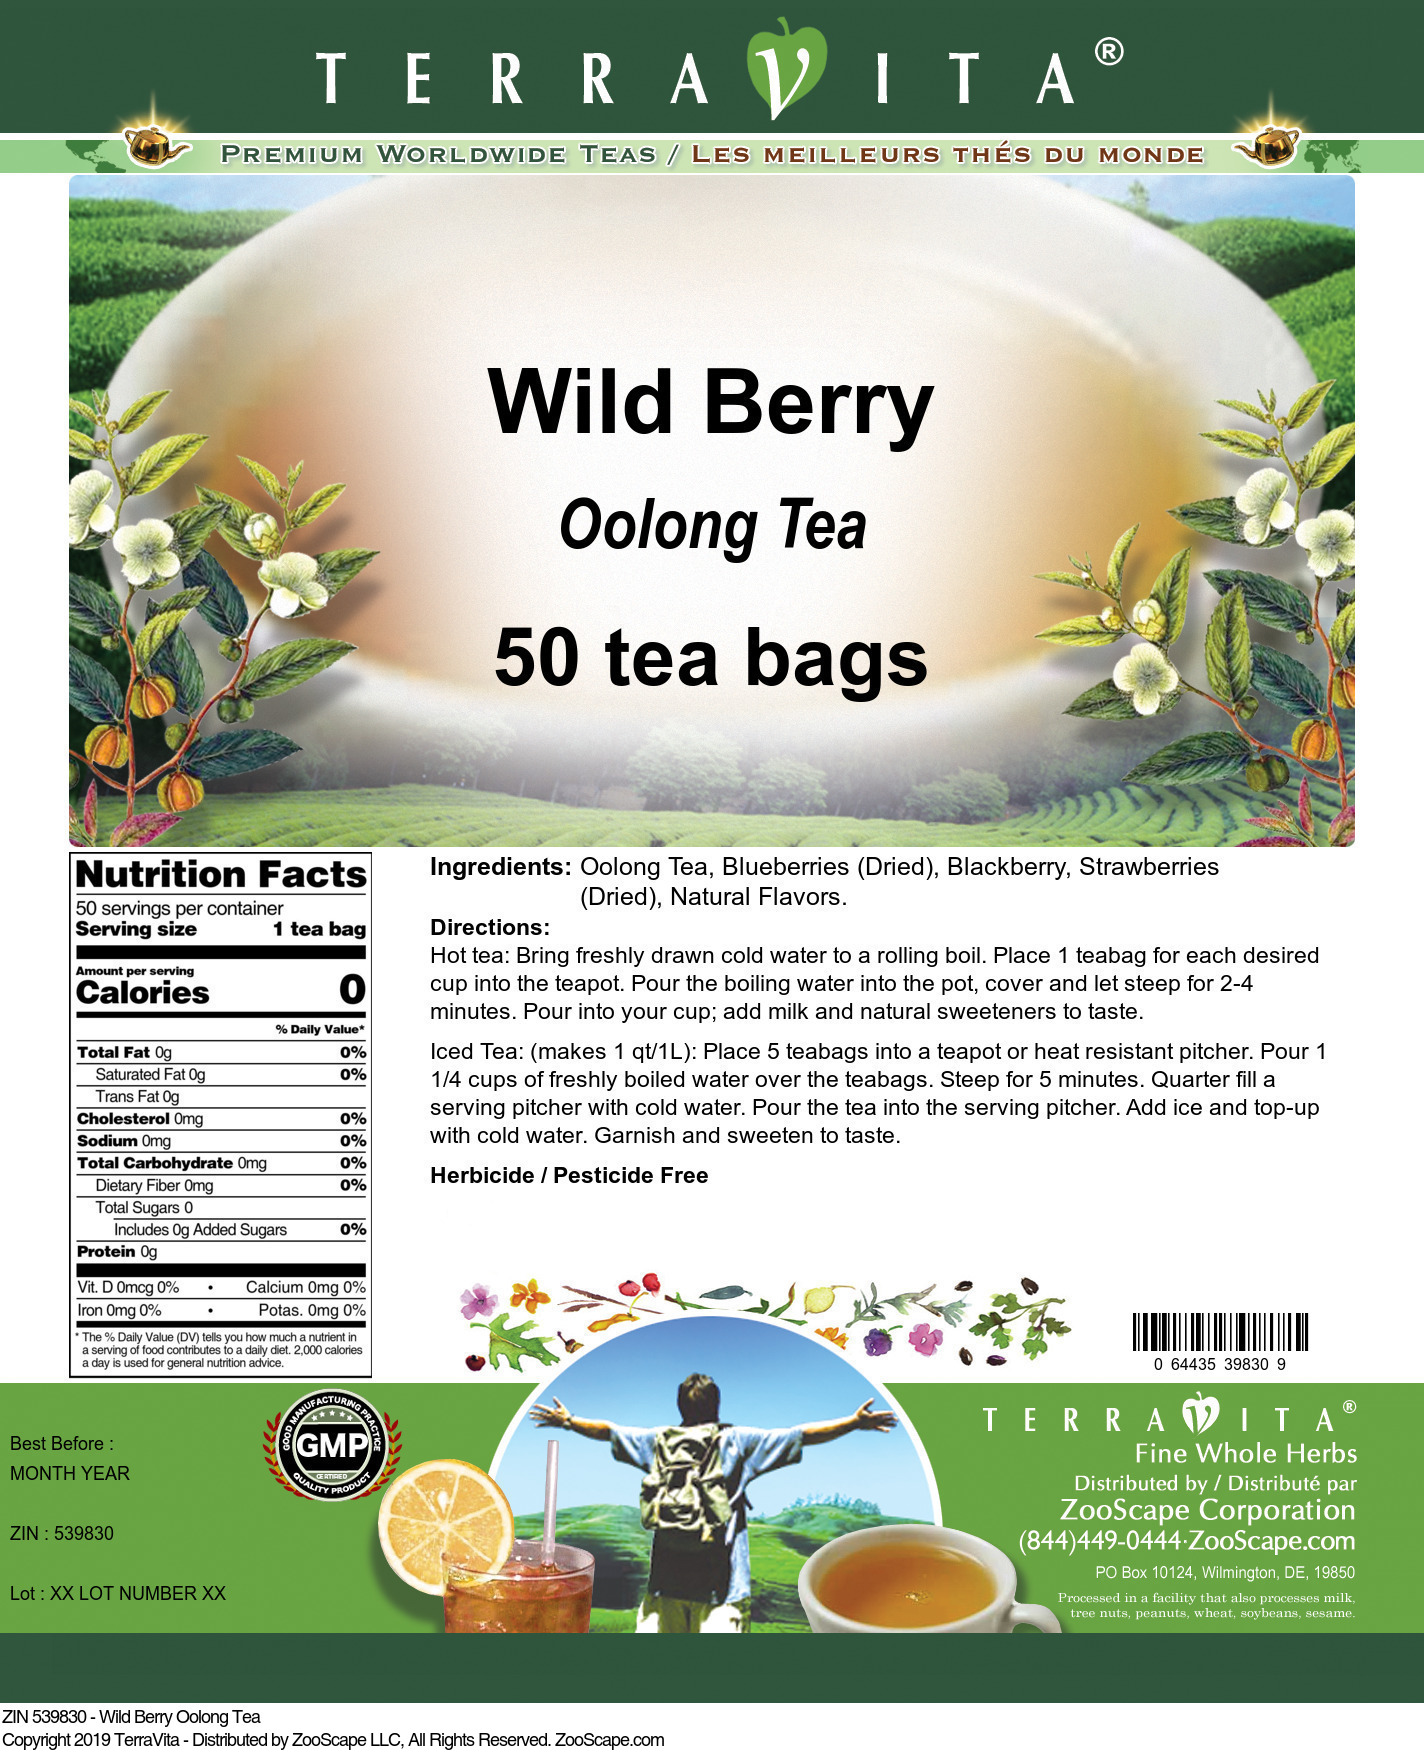 Wild Berry Oolong Tea - Label